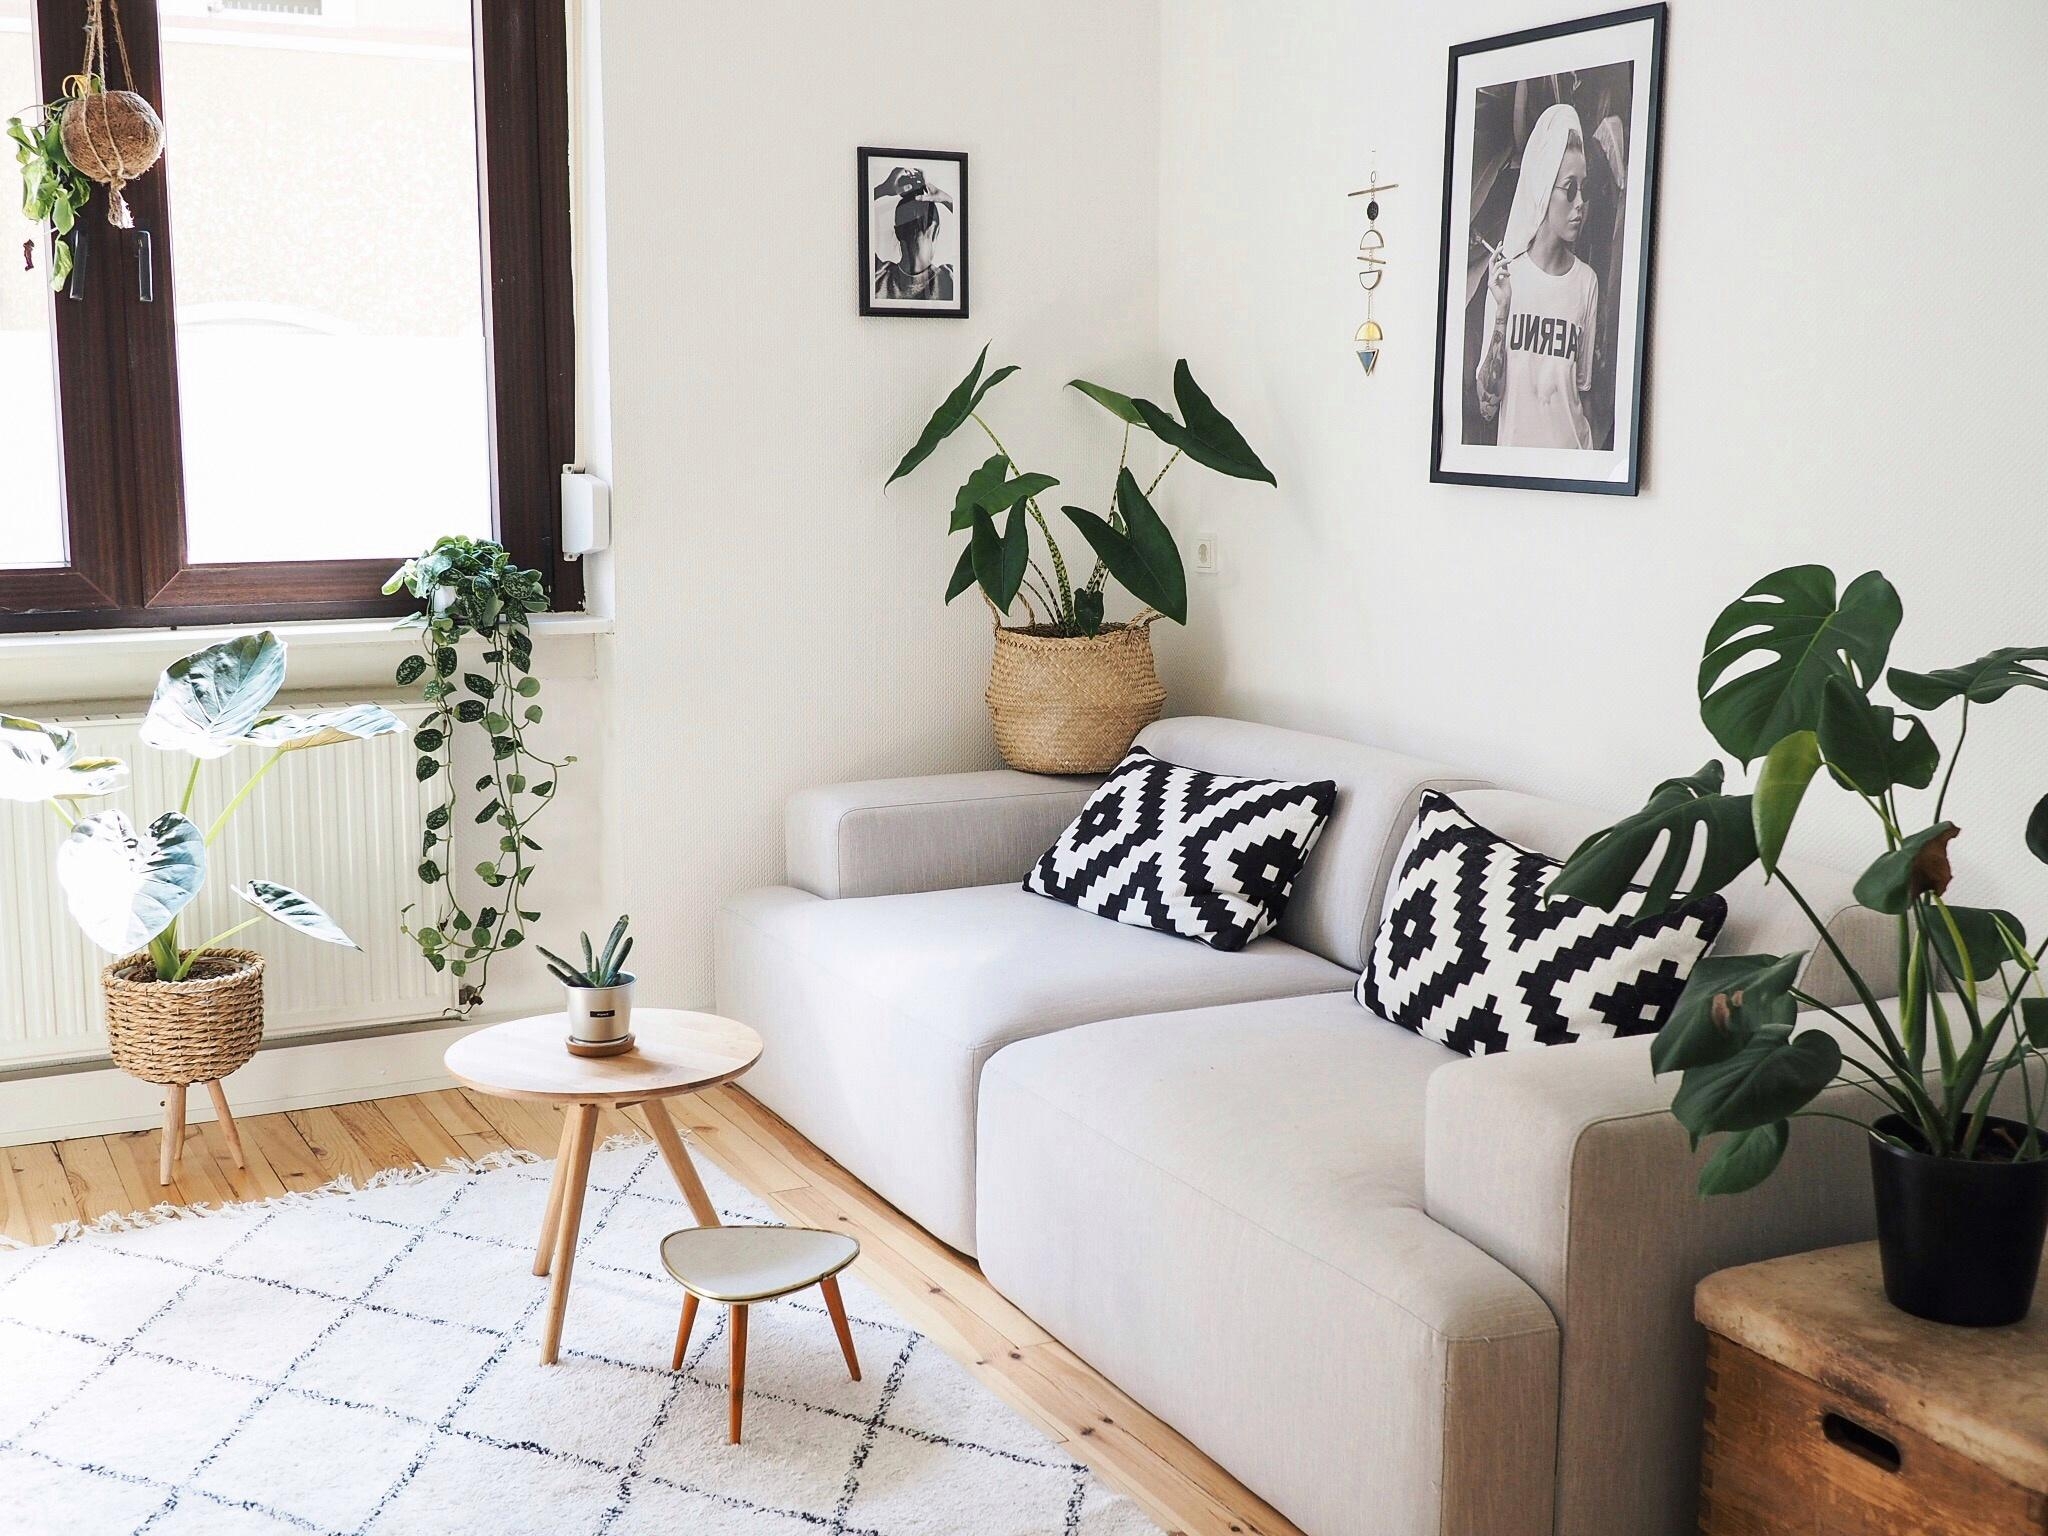 Und das Wohnzimmer darf natürlich auch nicht fehlen! 💫
#livingroom #couchliebt #couchstyle #couchmagazin #plantlover